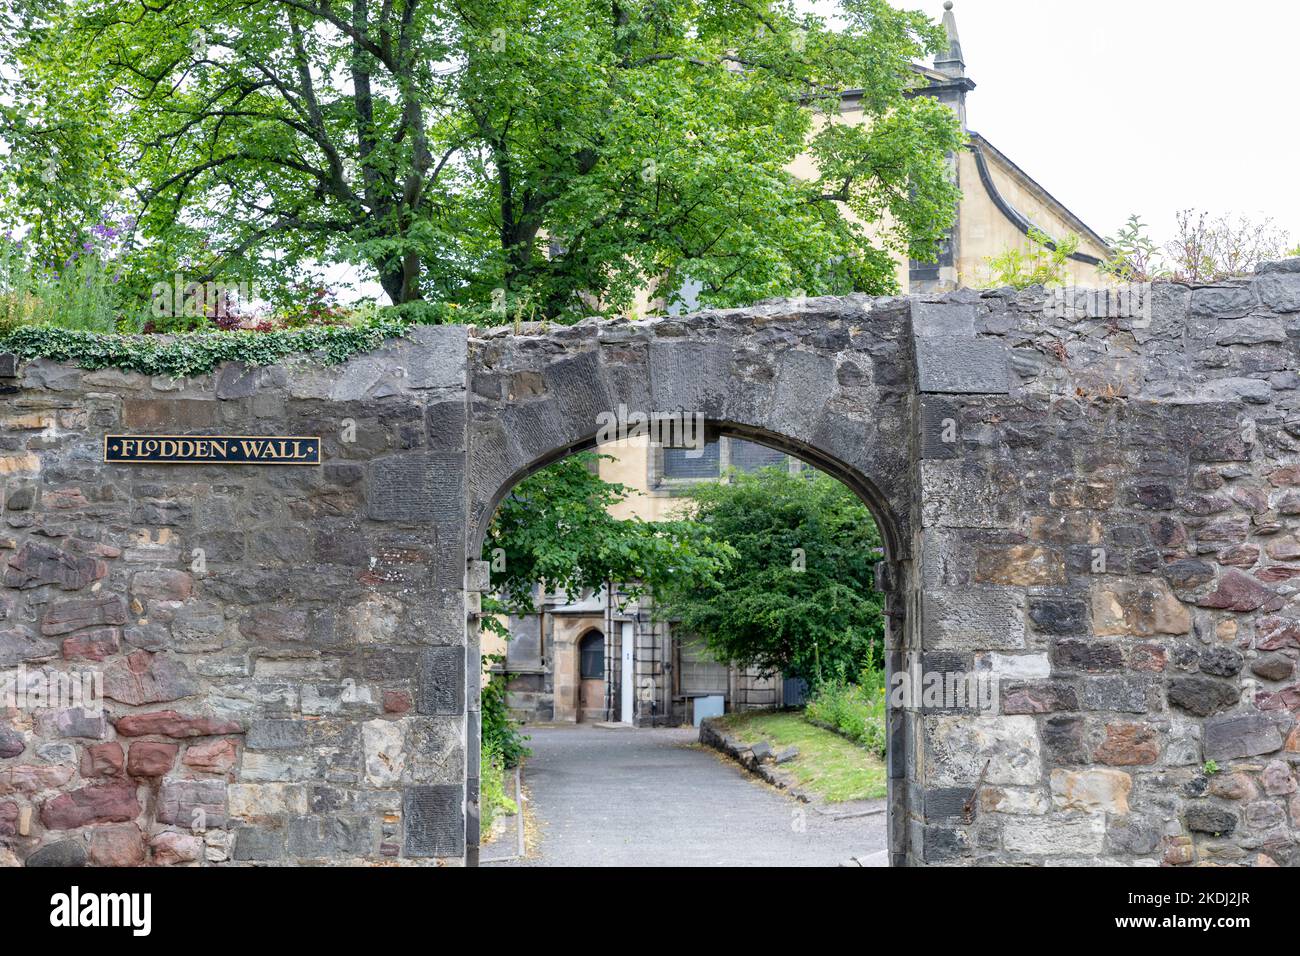 Überreste der Flodden-Mauer, die im 16.. Jahrhundert als Verteidigungsmauer um Edinburgh in Schlachten gegen englische Truppen, Greyfriars, Edinburghs Stadtzentrum erbaut wurde Stockfoto